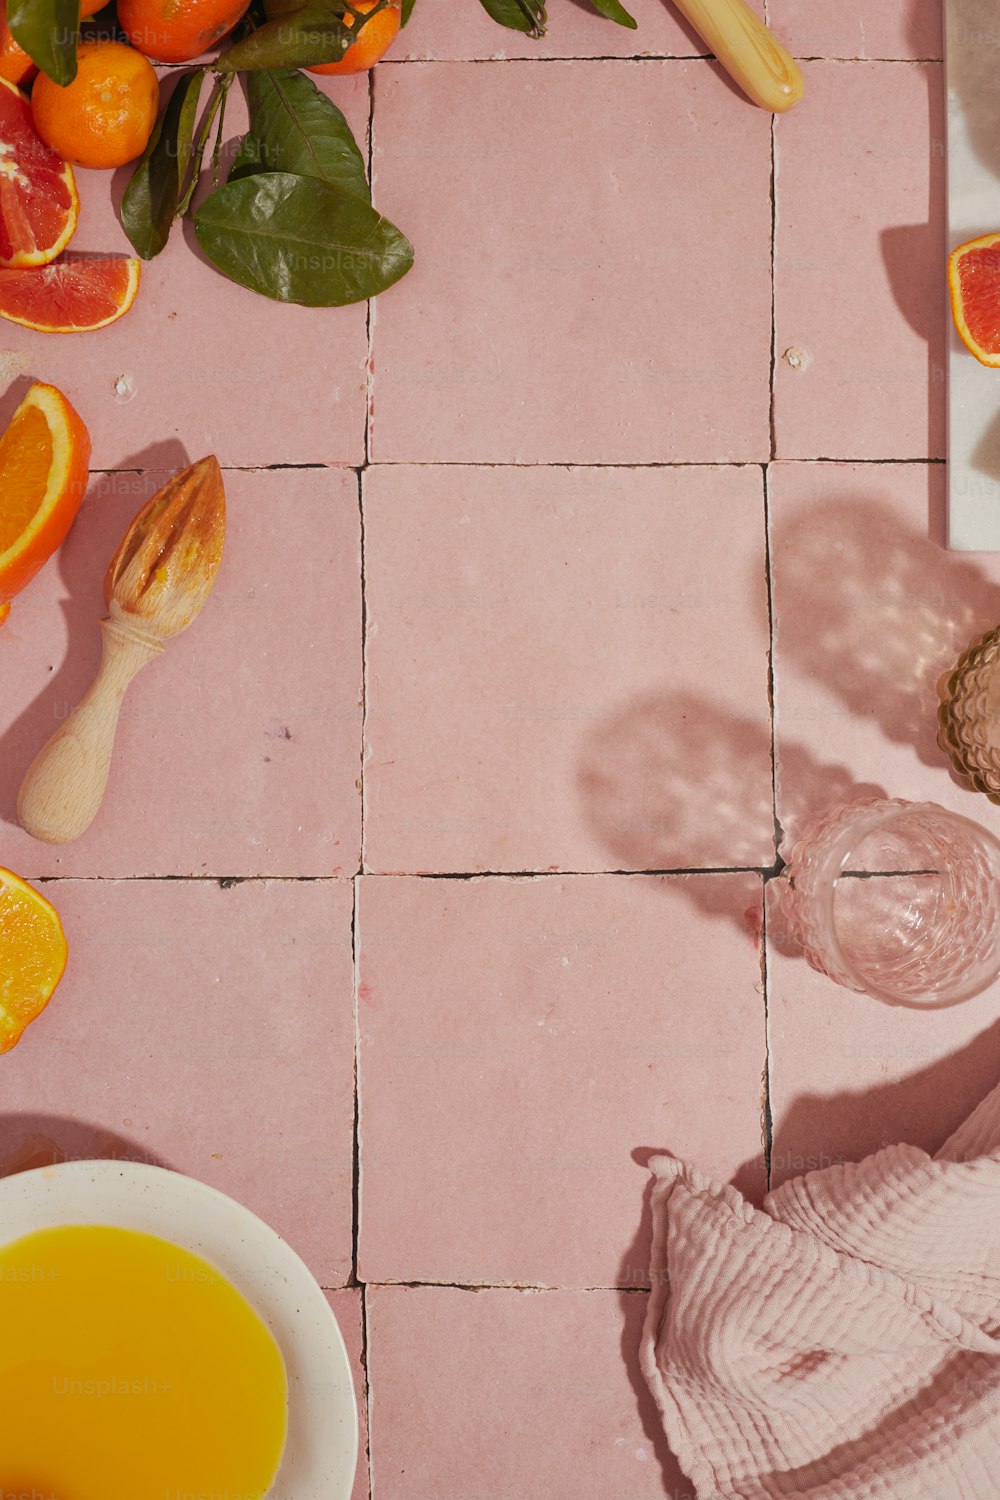 un suelo de baldosas rosadas con naranjas y otras frutas